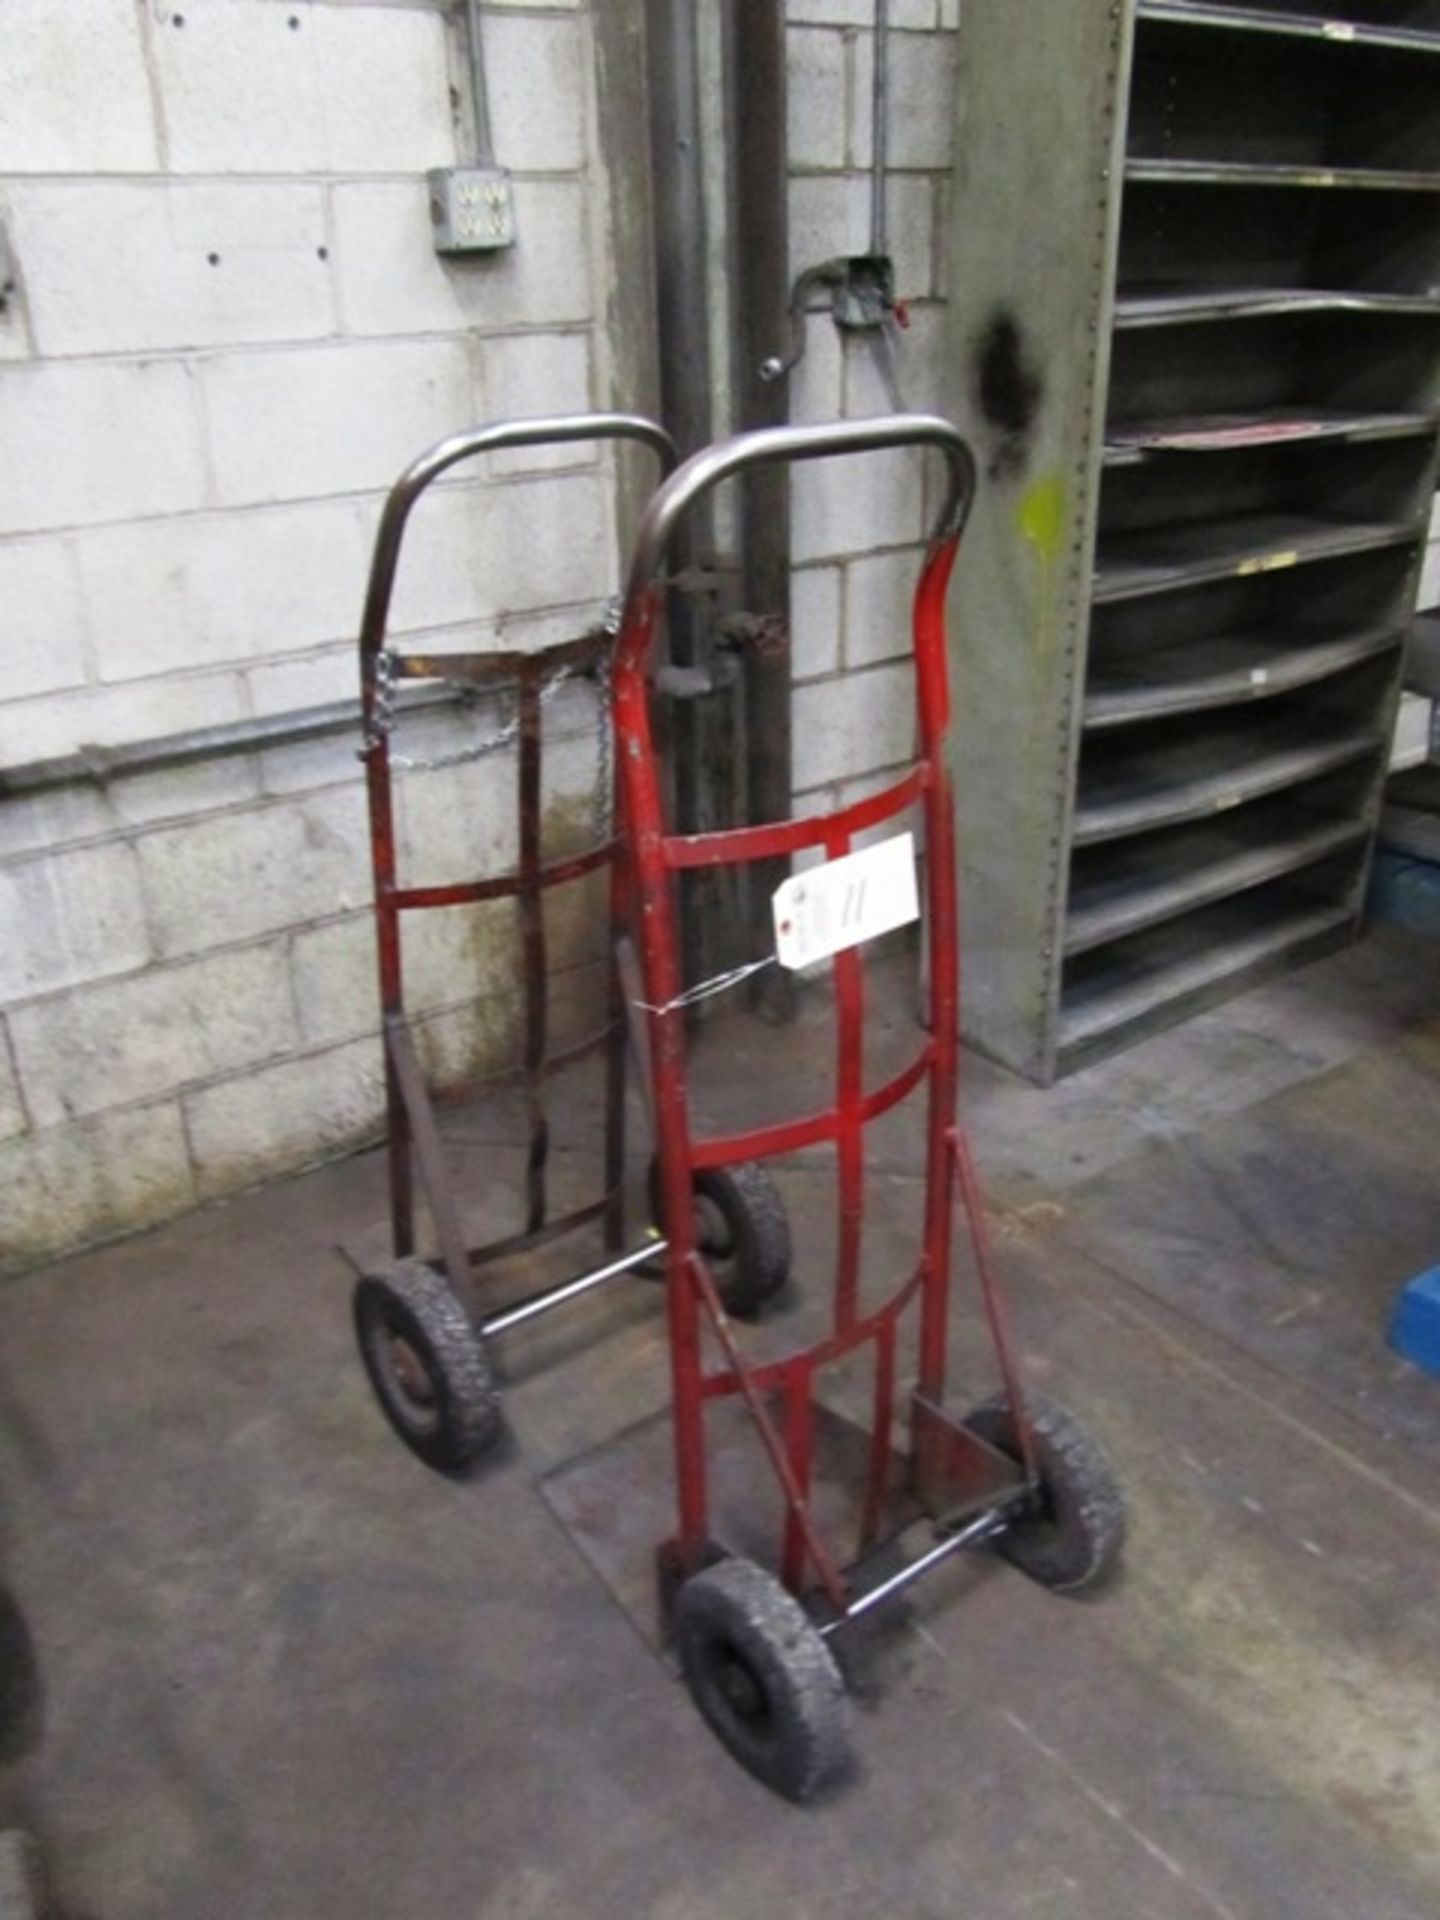 (2) Portable Bottle Carts